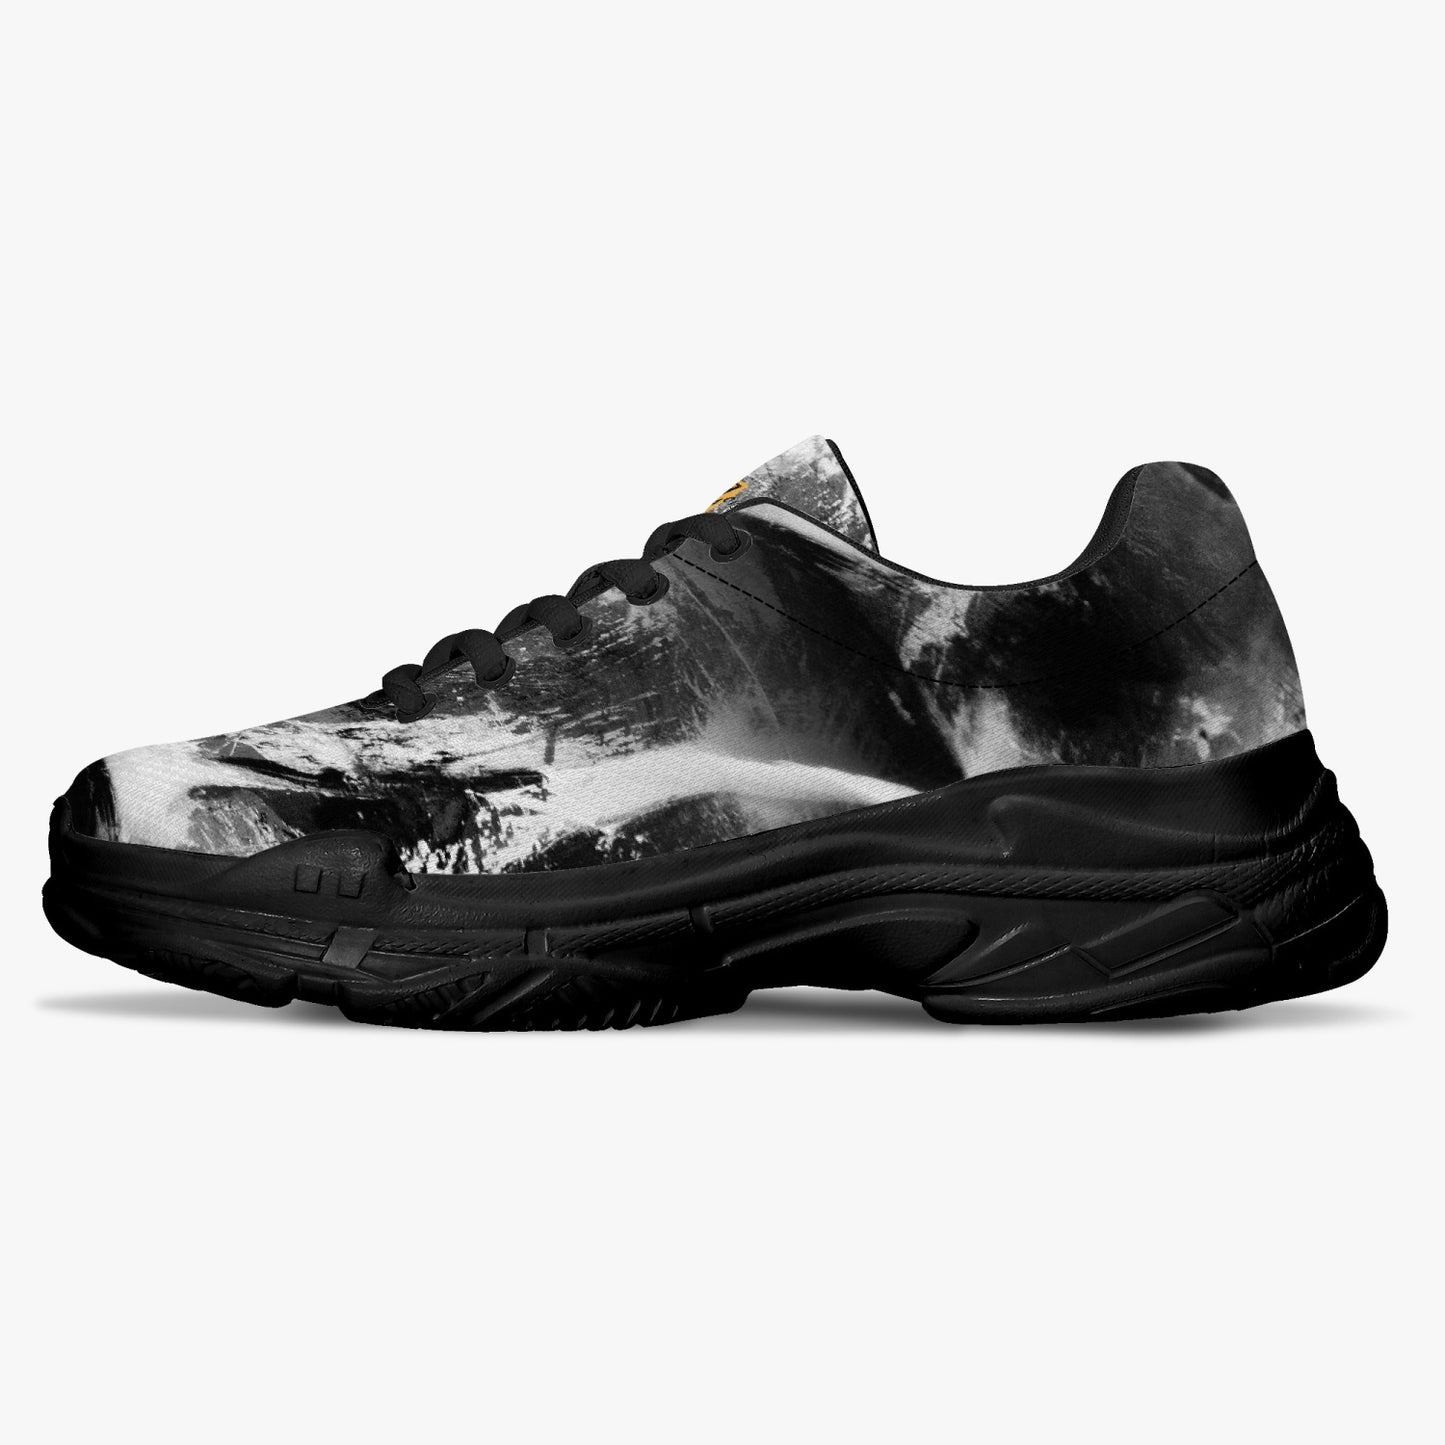 Sneakers "foschia" unisex (bianco / nero)